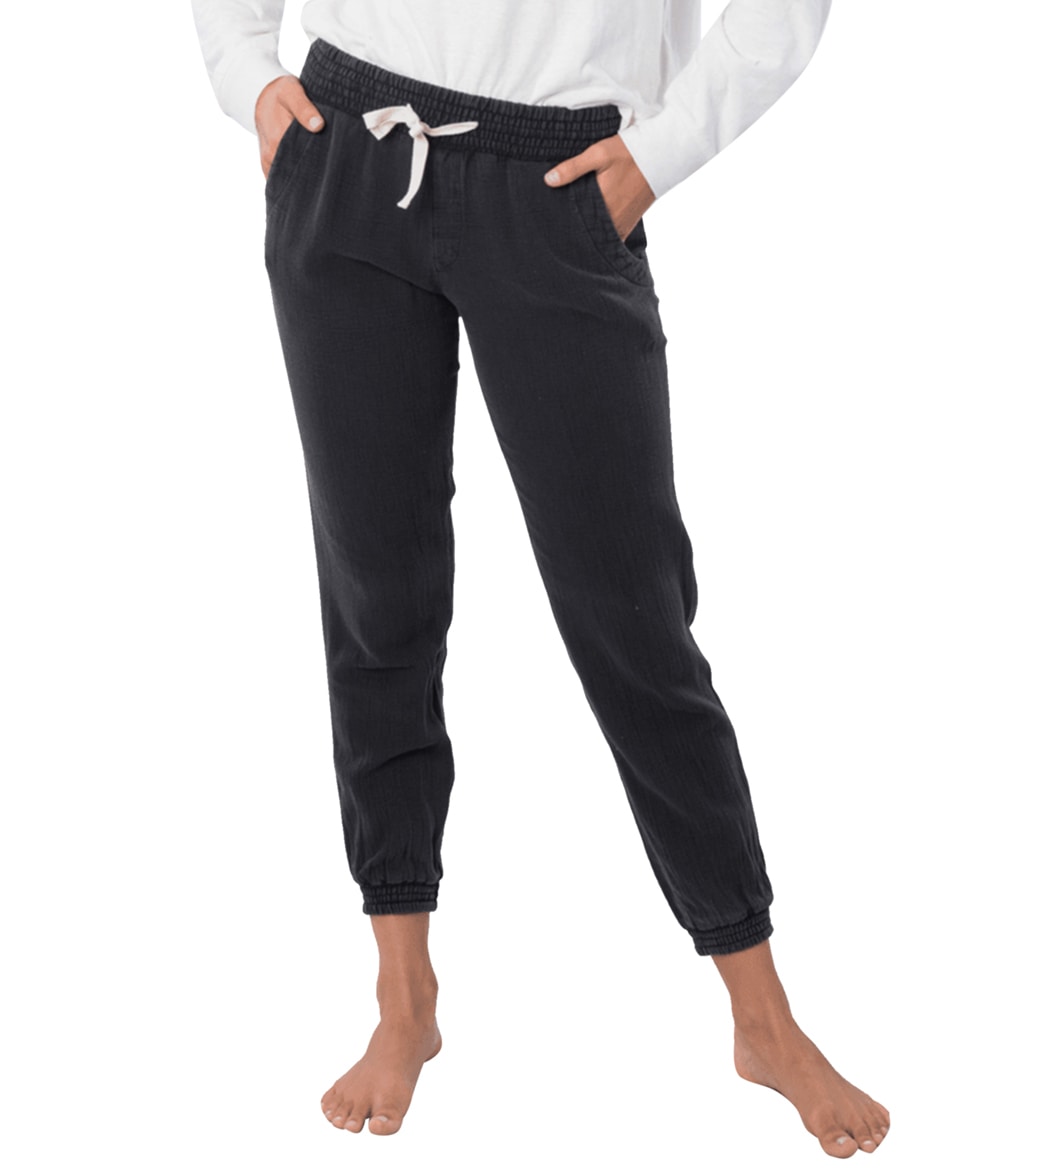 Rip Curl Women's Classic Surf Pants - Black Small Cotton - Swimoutlet.com